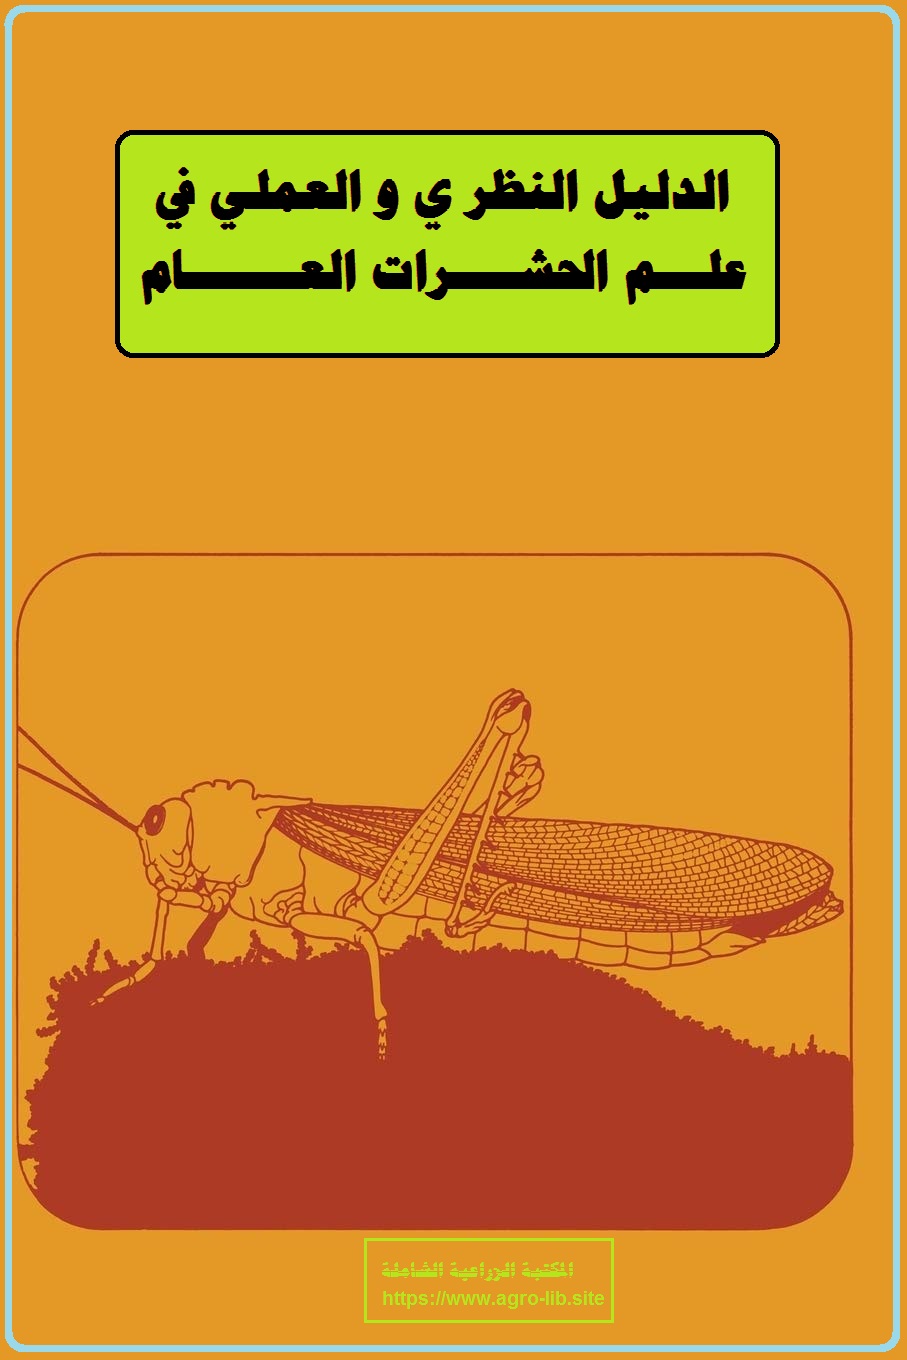 كتاب : الدليل النظري و العملي في علم الحشرات العام